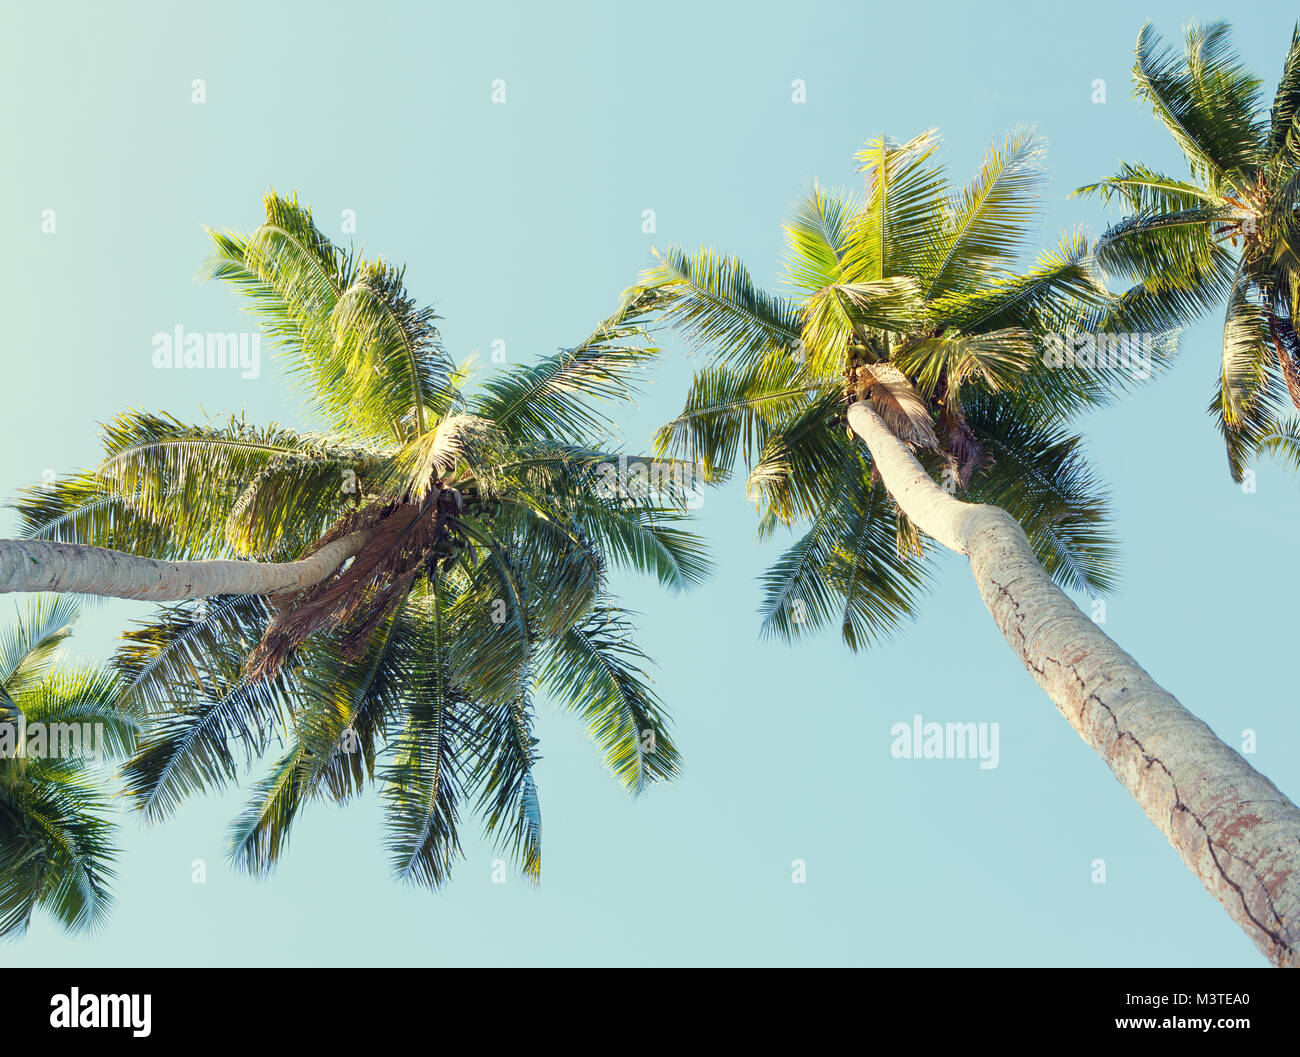 Kokospalmen am Himmel Hintergrund. Low Angle View. Getonten Bild Stockfoto